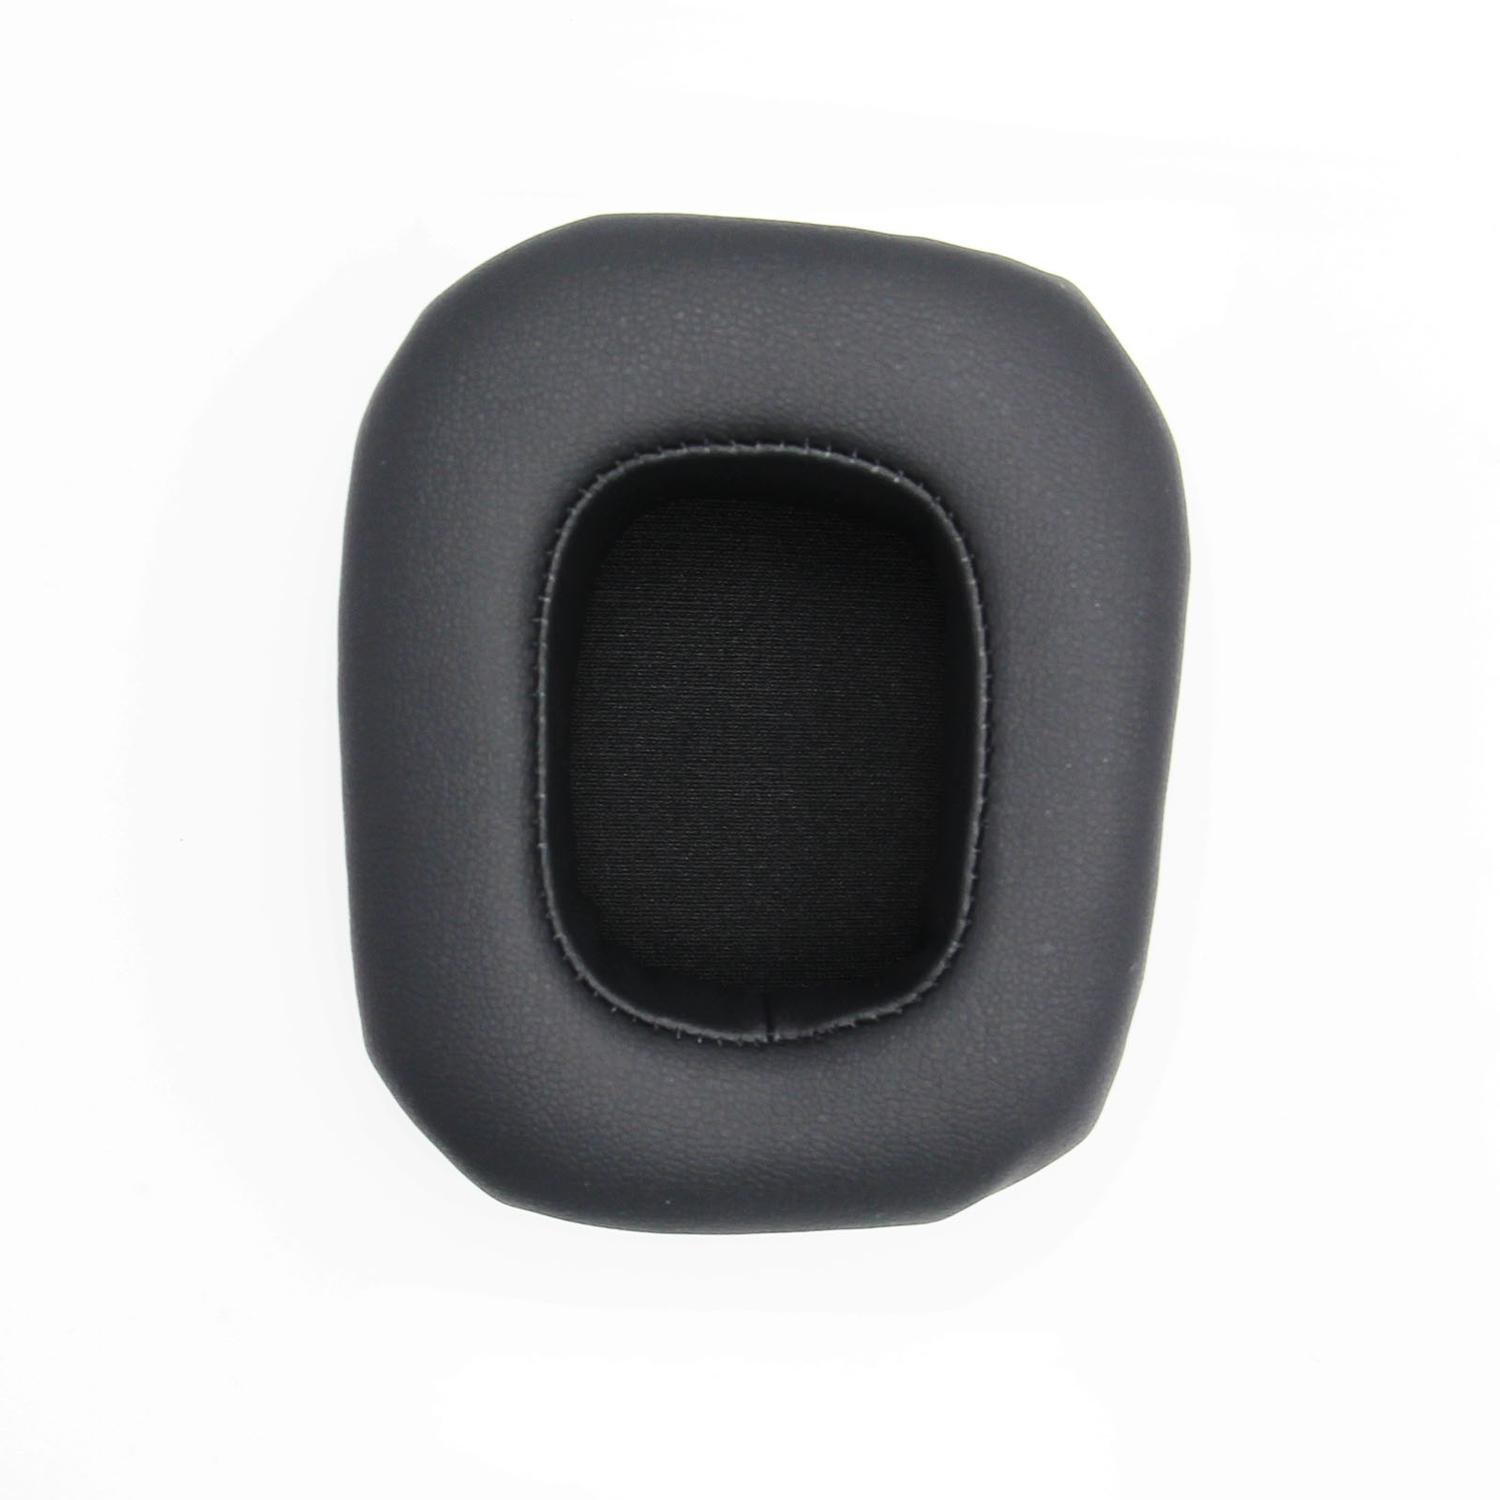 2.2 mit schwarz Protein Razer für: kompatibel Ohrpolster Black Leather passend Tiamat Ohrpolster INF Razer